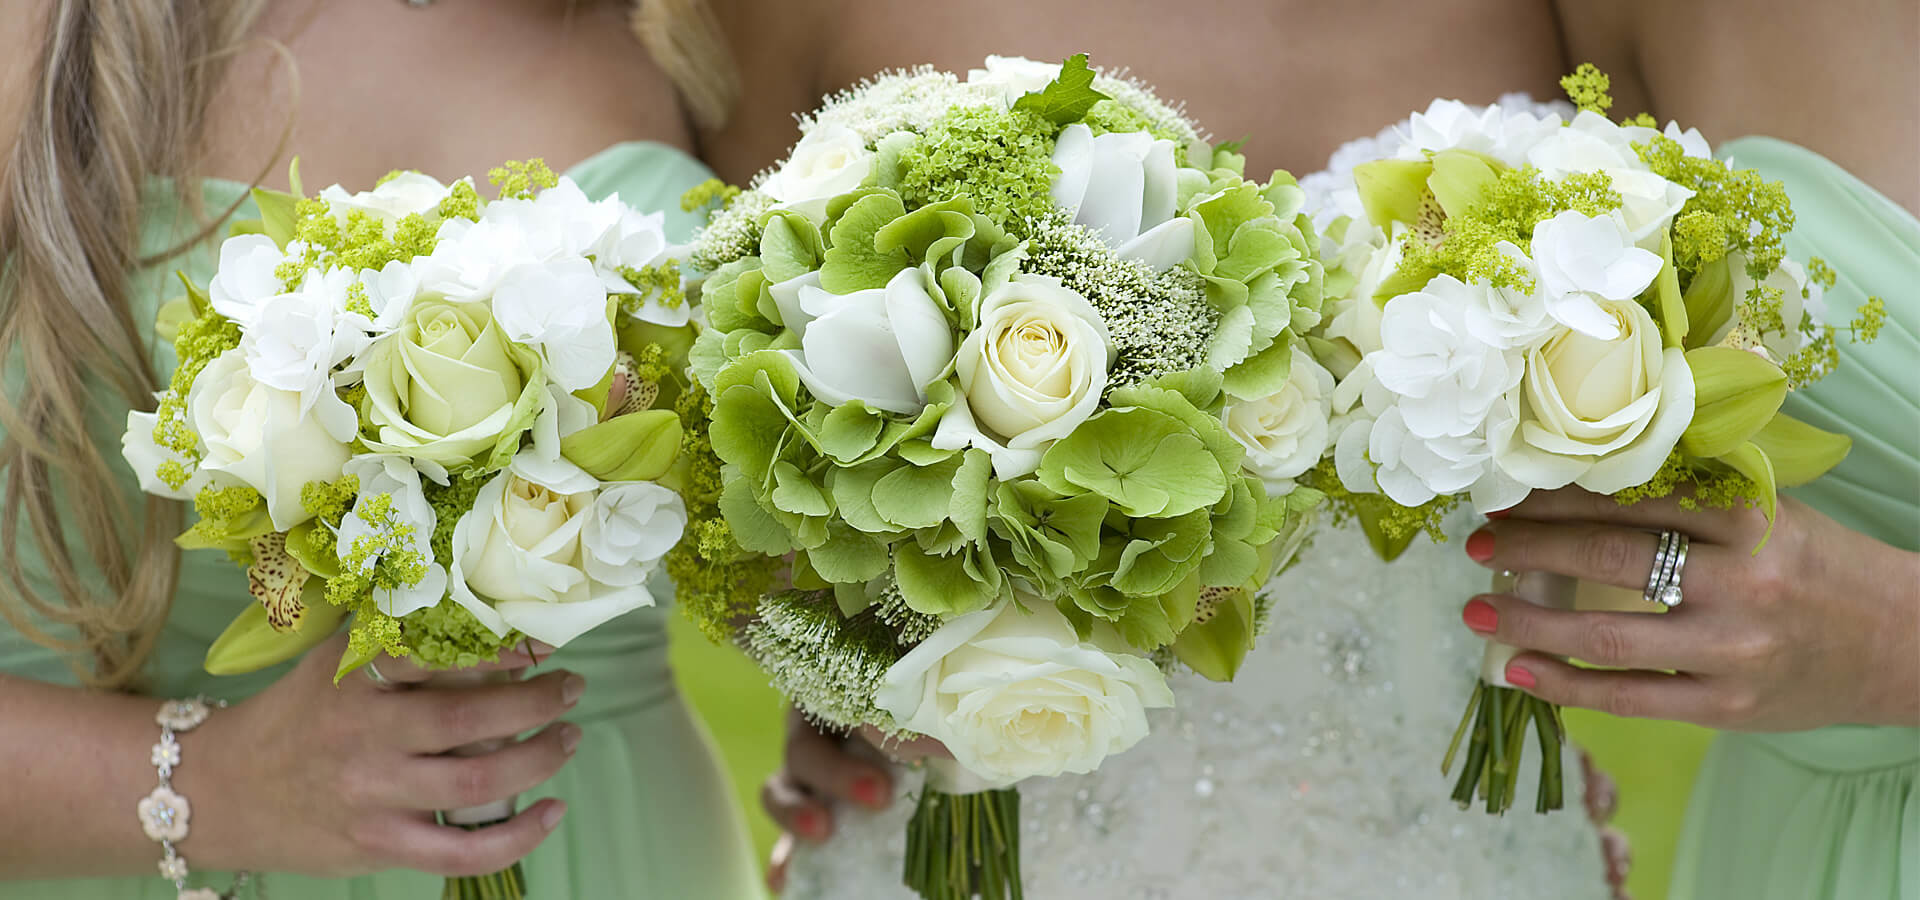 Как правильно организовать свадьбу в зеленом цвете?